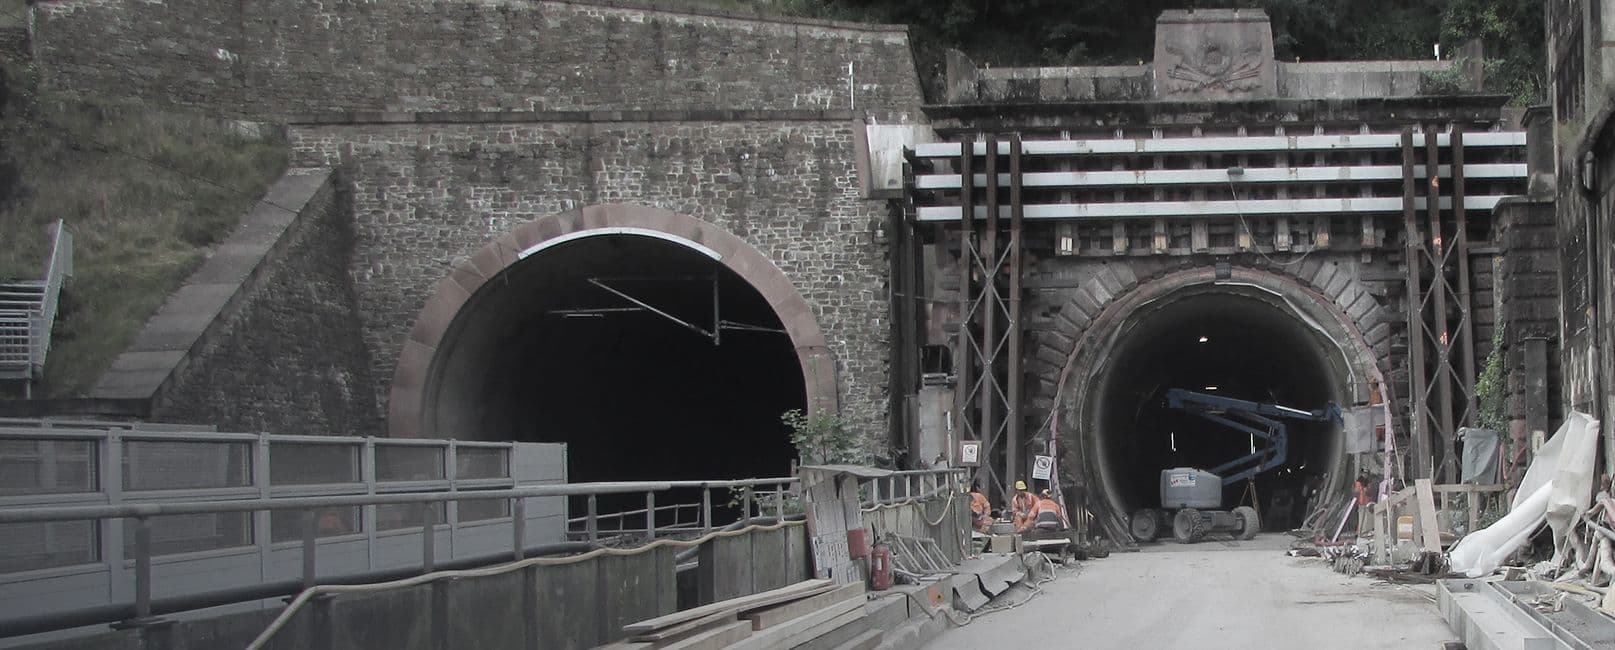  The “Alter Kaiser Wilhelm Tunnel” 